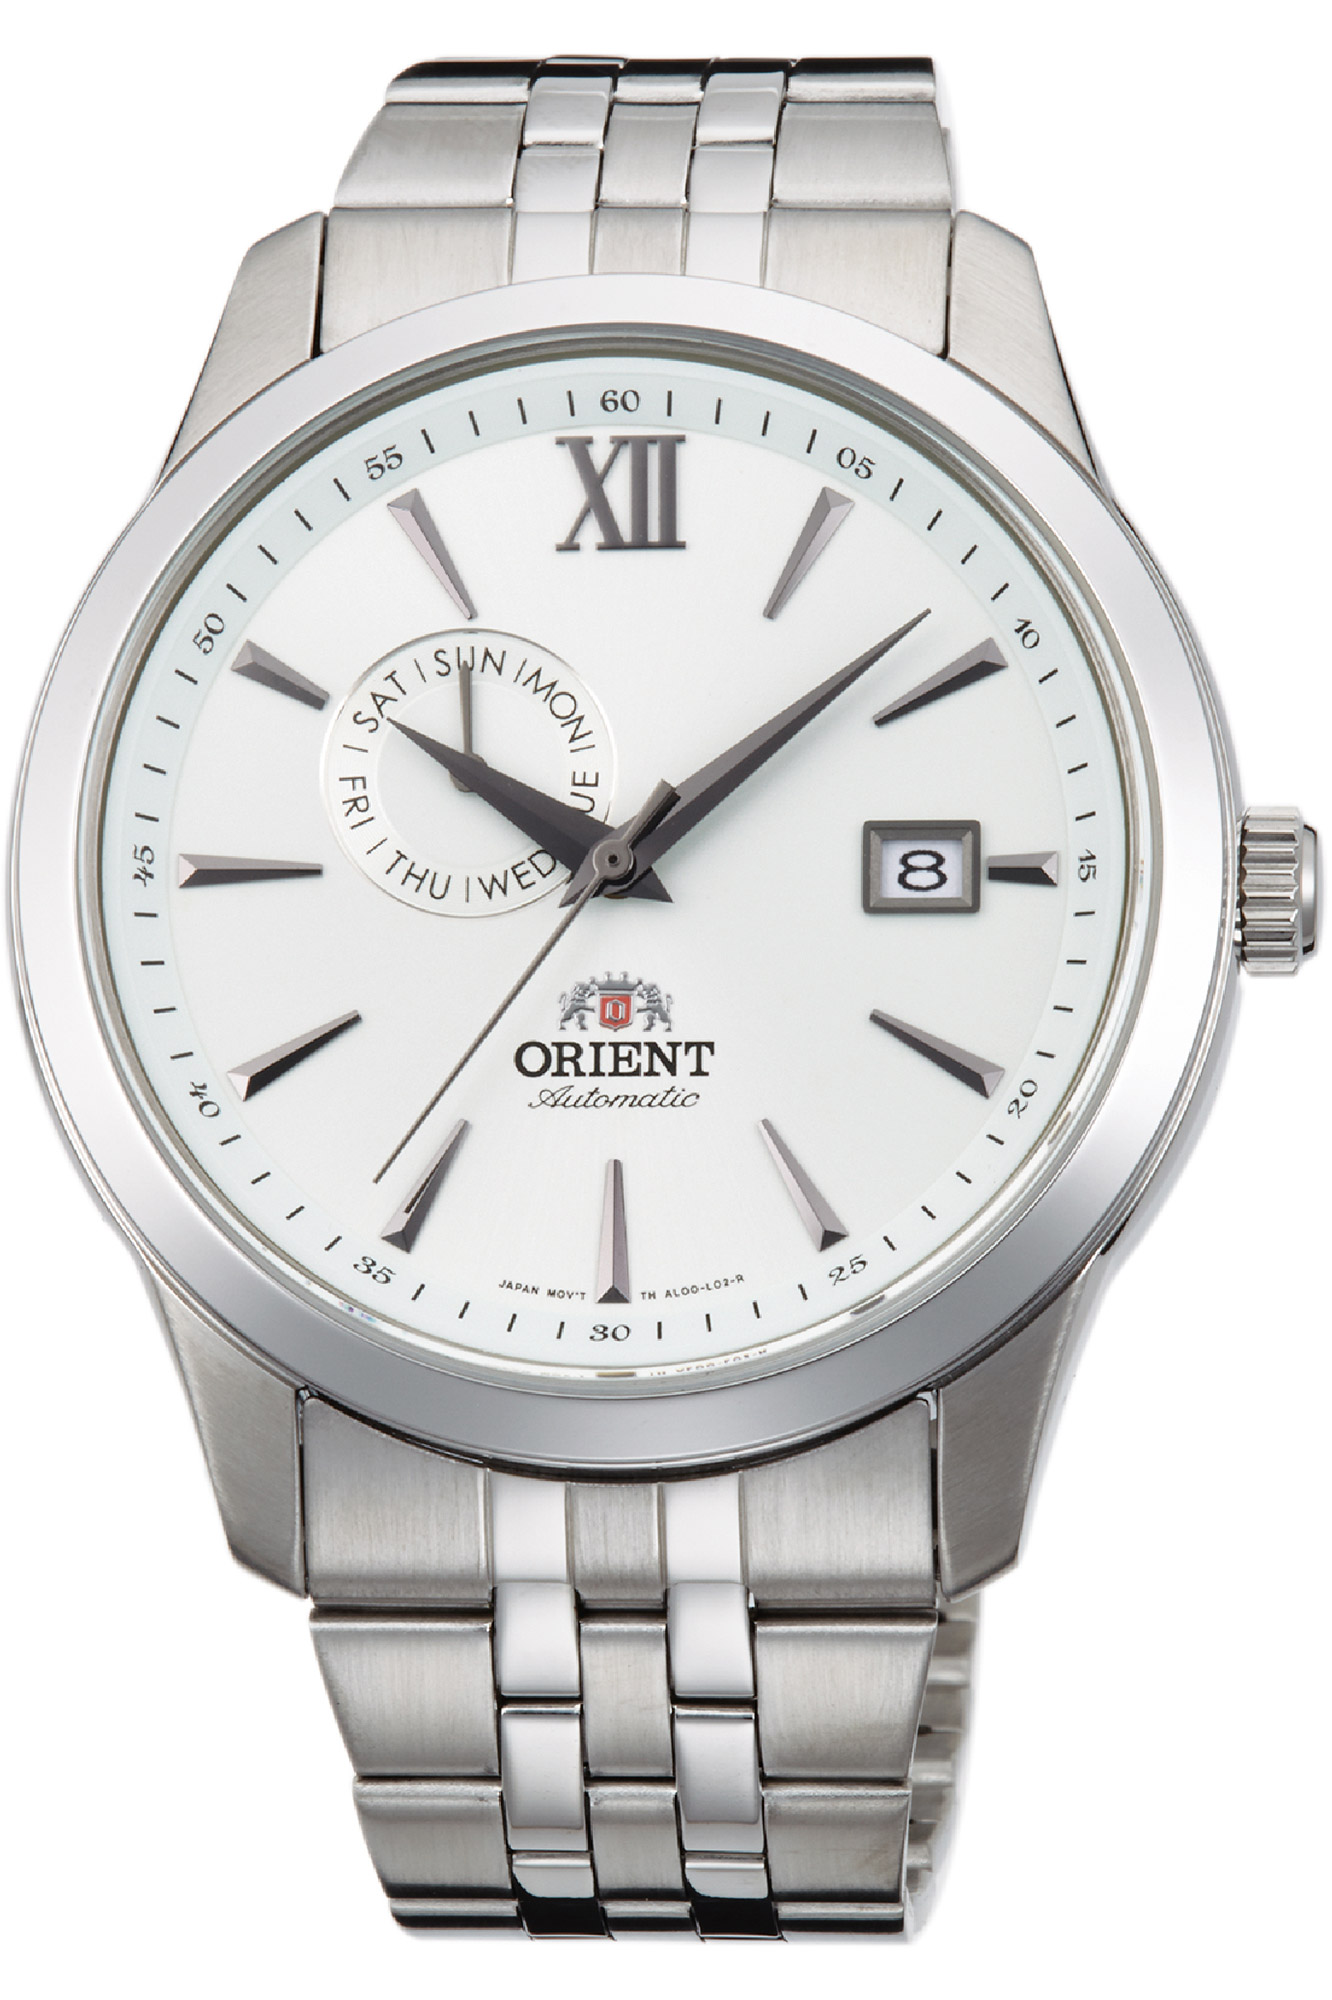 Купить часы ориент механика. Наручные часы Orient fal00003w. Мужские часы Orient al00003w. Часы Orient ra-kv0005b10b. Наручные часы Orient fal00001w.